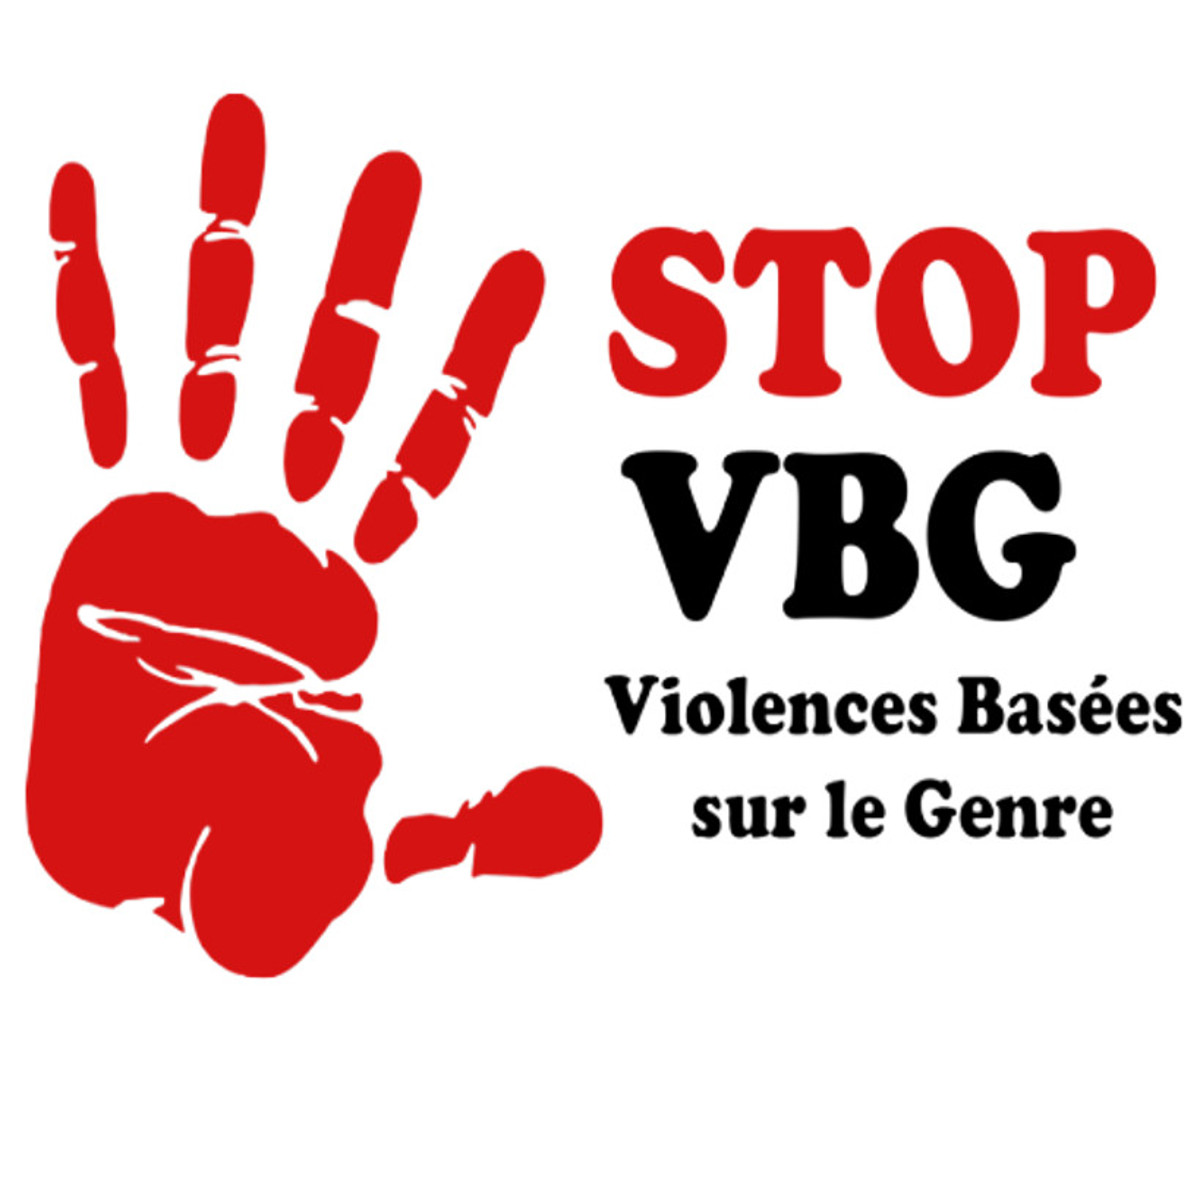 Appel urgent à l'éradication de la violence basée sur le genre